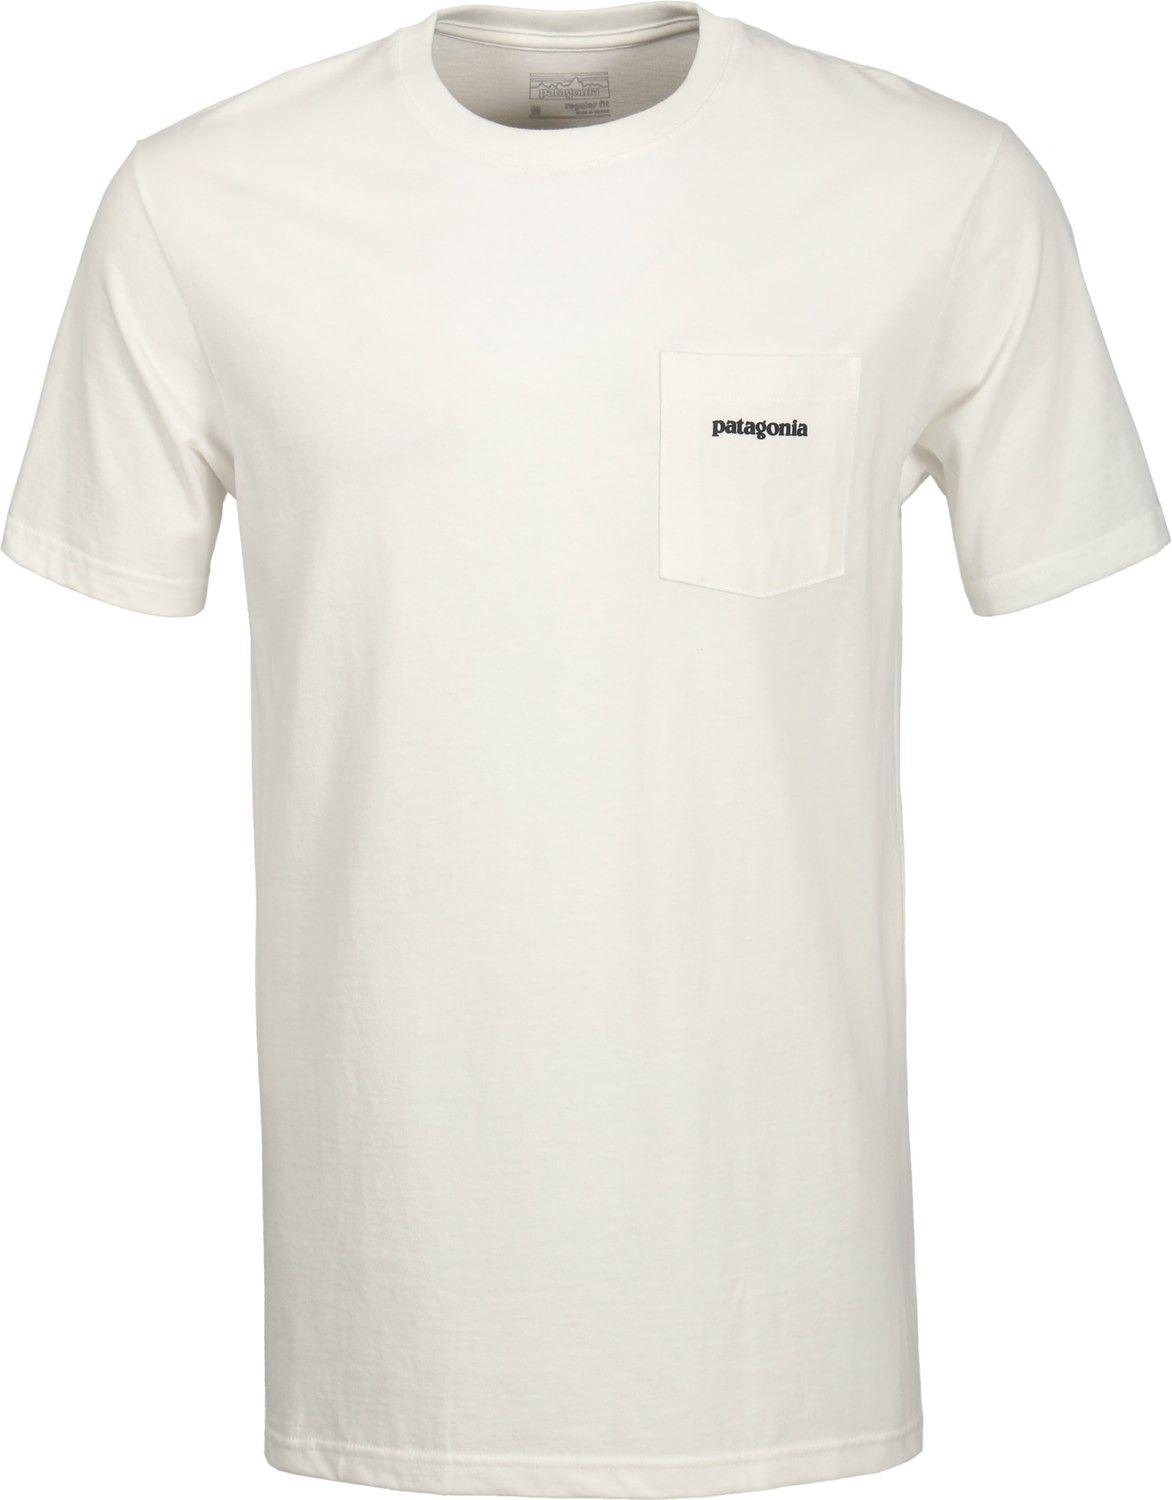 LRG Pocket Logo - Patagonia Men Clothing: Patagonia P 6 Logo Pocket T Shirt With White